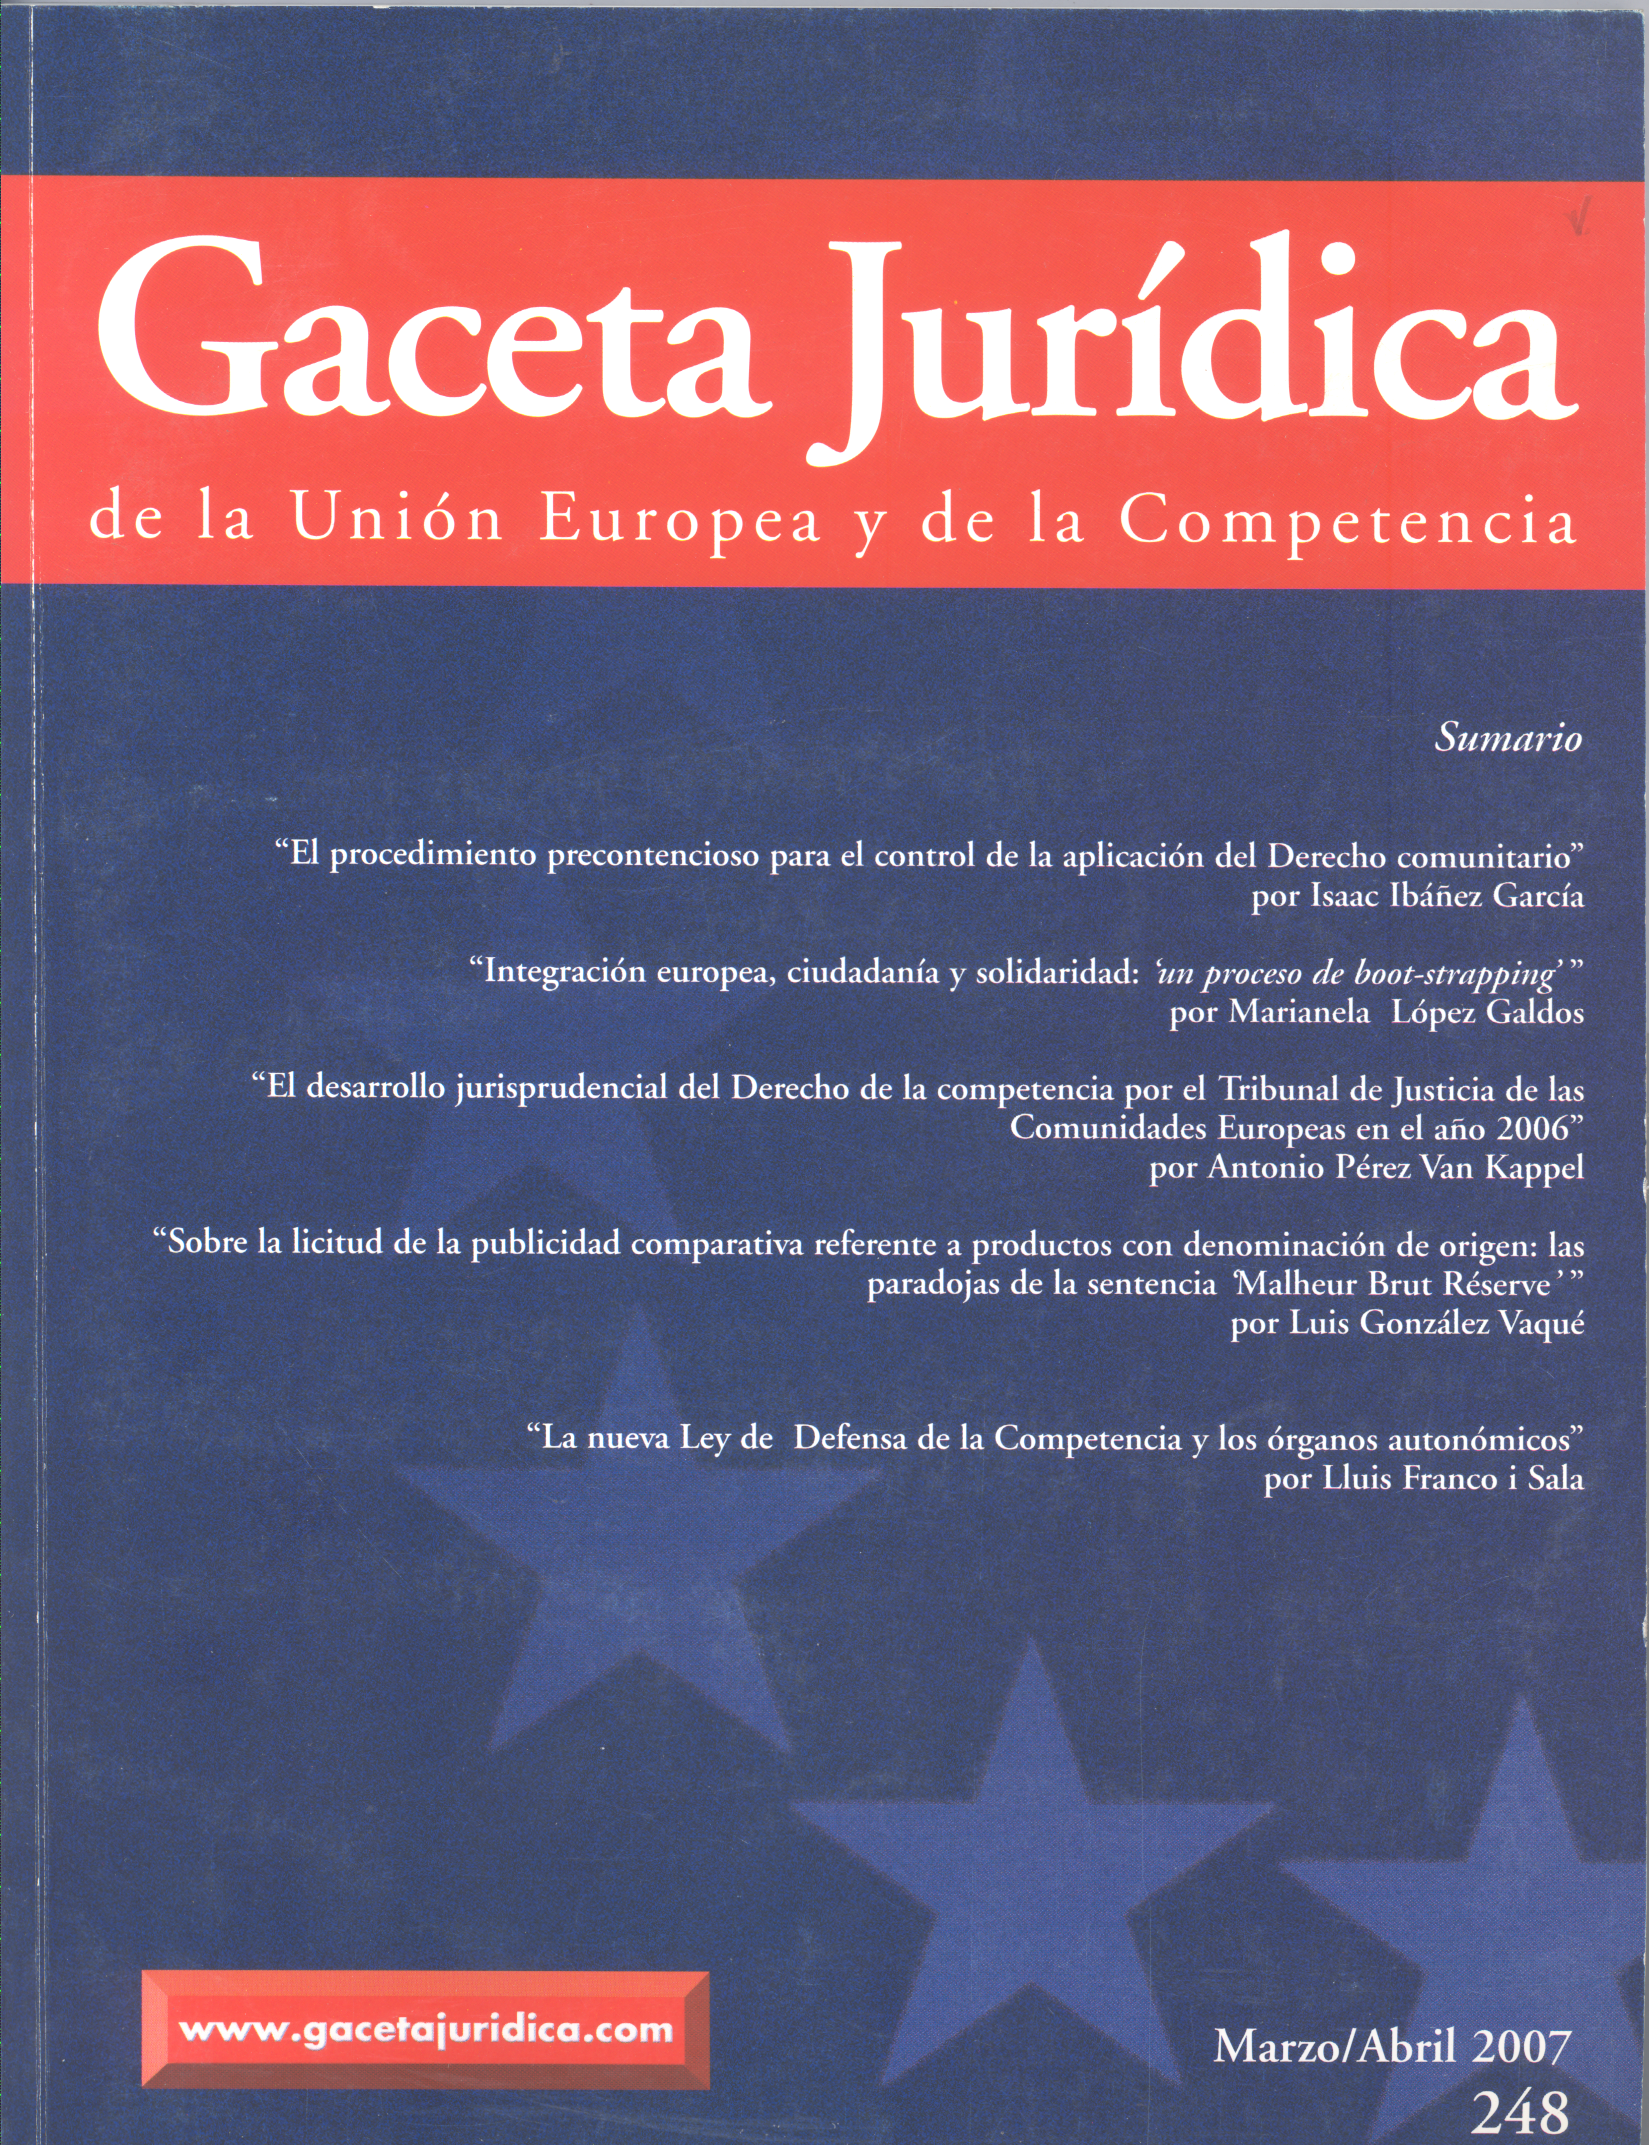 El desarrollo jurisprudencial del Derecho de la competencia por el Tribunal de Justicia de las Comunidades Europeas en el año 2006